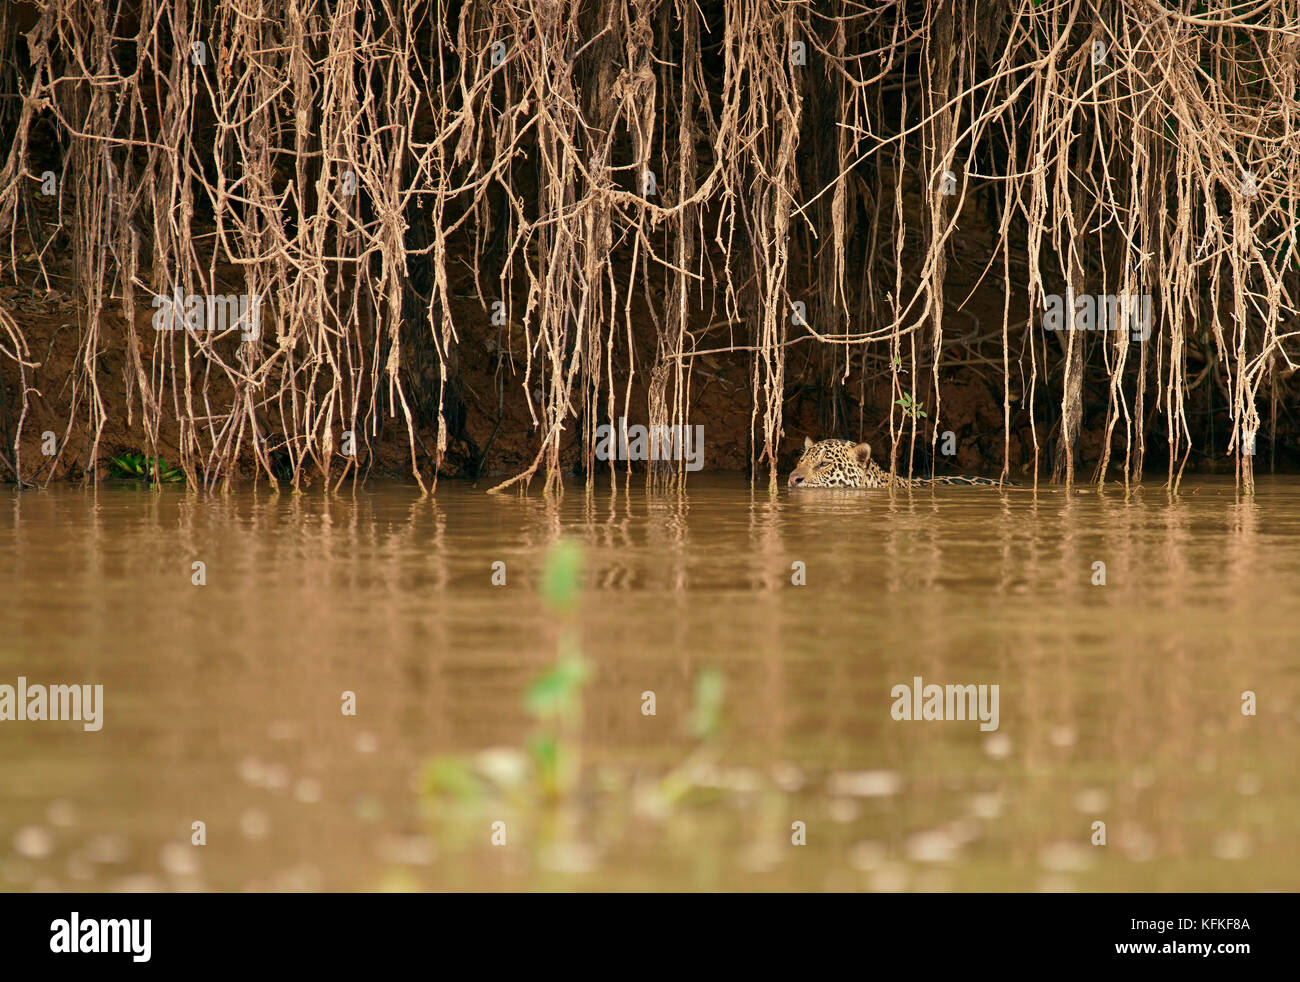 Jaguar (Panthera onca) si annida nell'acqua presso la banca di fiume, Pantanal, Mato Grosso, brasile Foto Stock